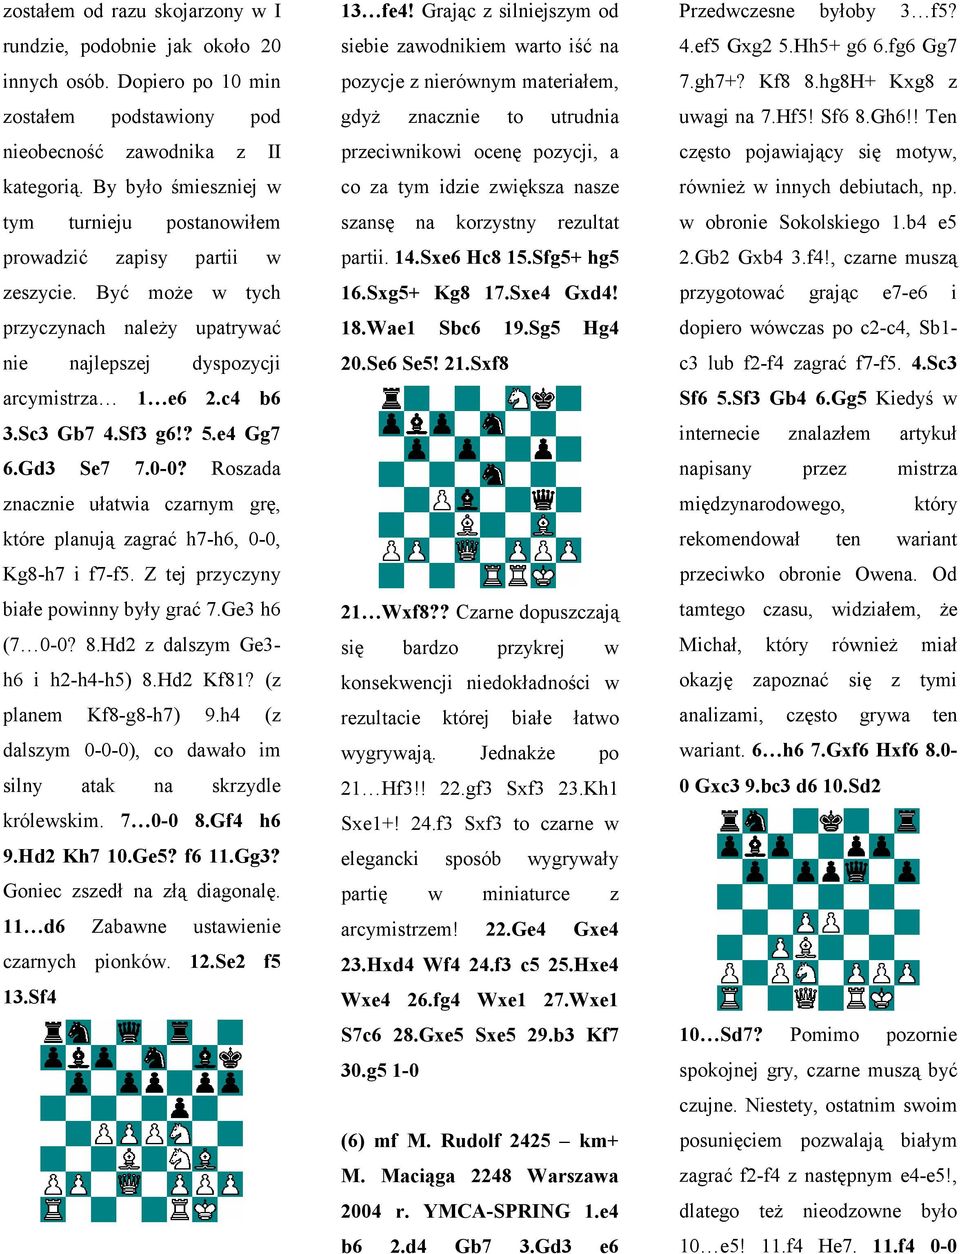 ? 5.e4 Gg7 6.Gd3 Se7 7.0-0? Roszada znacznie ułatwia czarnym grę, które planują zagrać h7-h6, 0-0, Kg8-h7 i f7-f5. Z tej przyczyny białe powinny były grać 7.Ge3 h6 (7 0-0? 8.